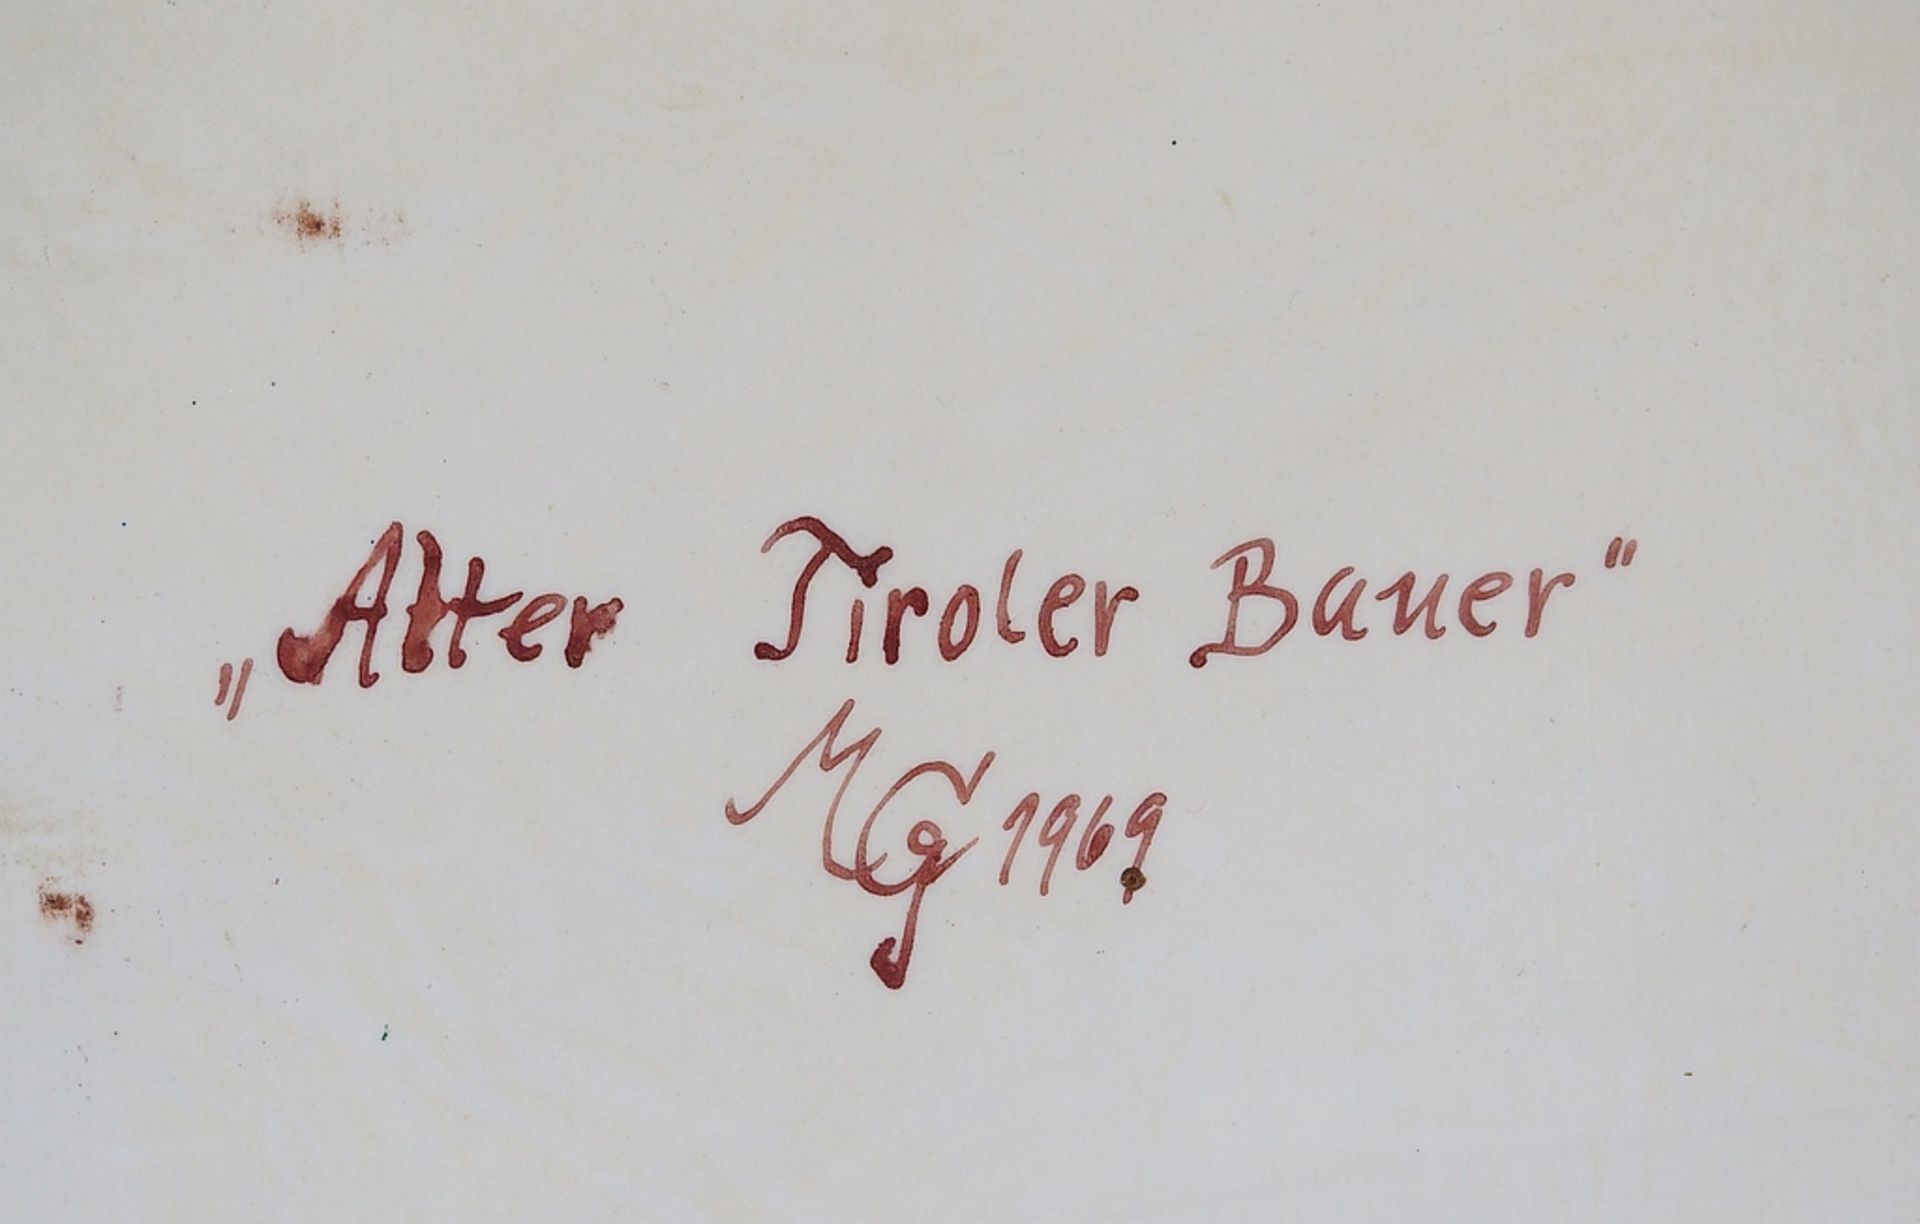 Porzellanbild mit Motiv nach Max Grötsch, "Tiroler Bauer", datiert 1969, - Image 5 of 6